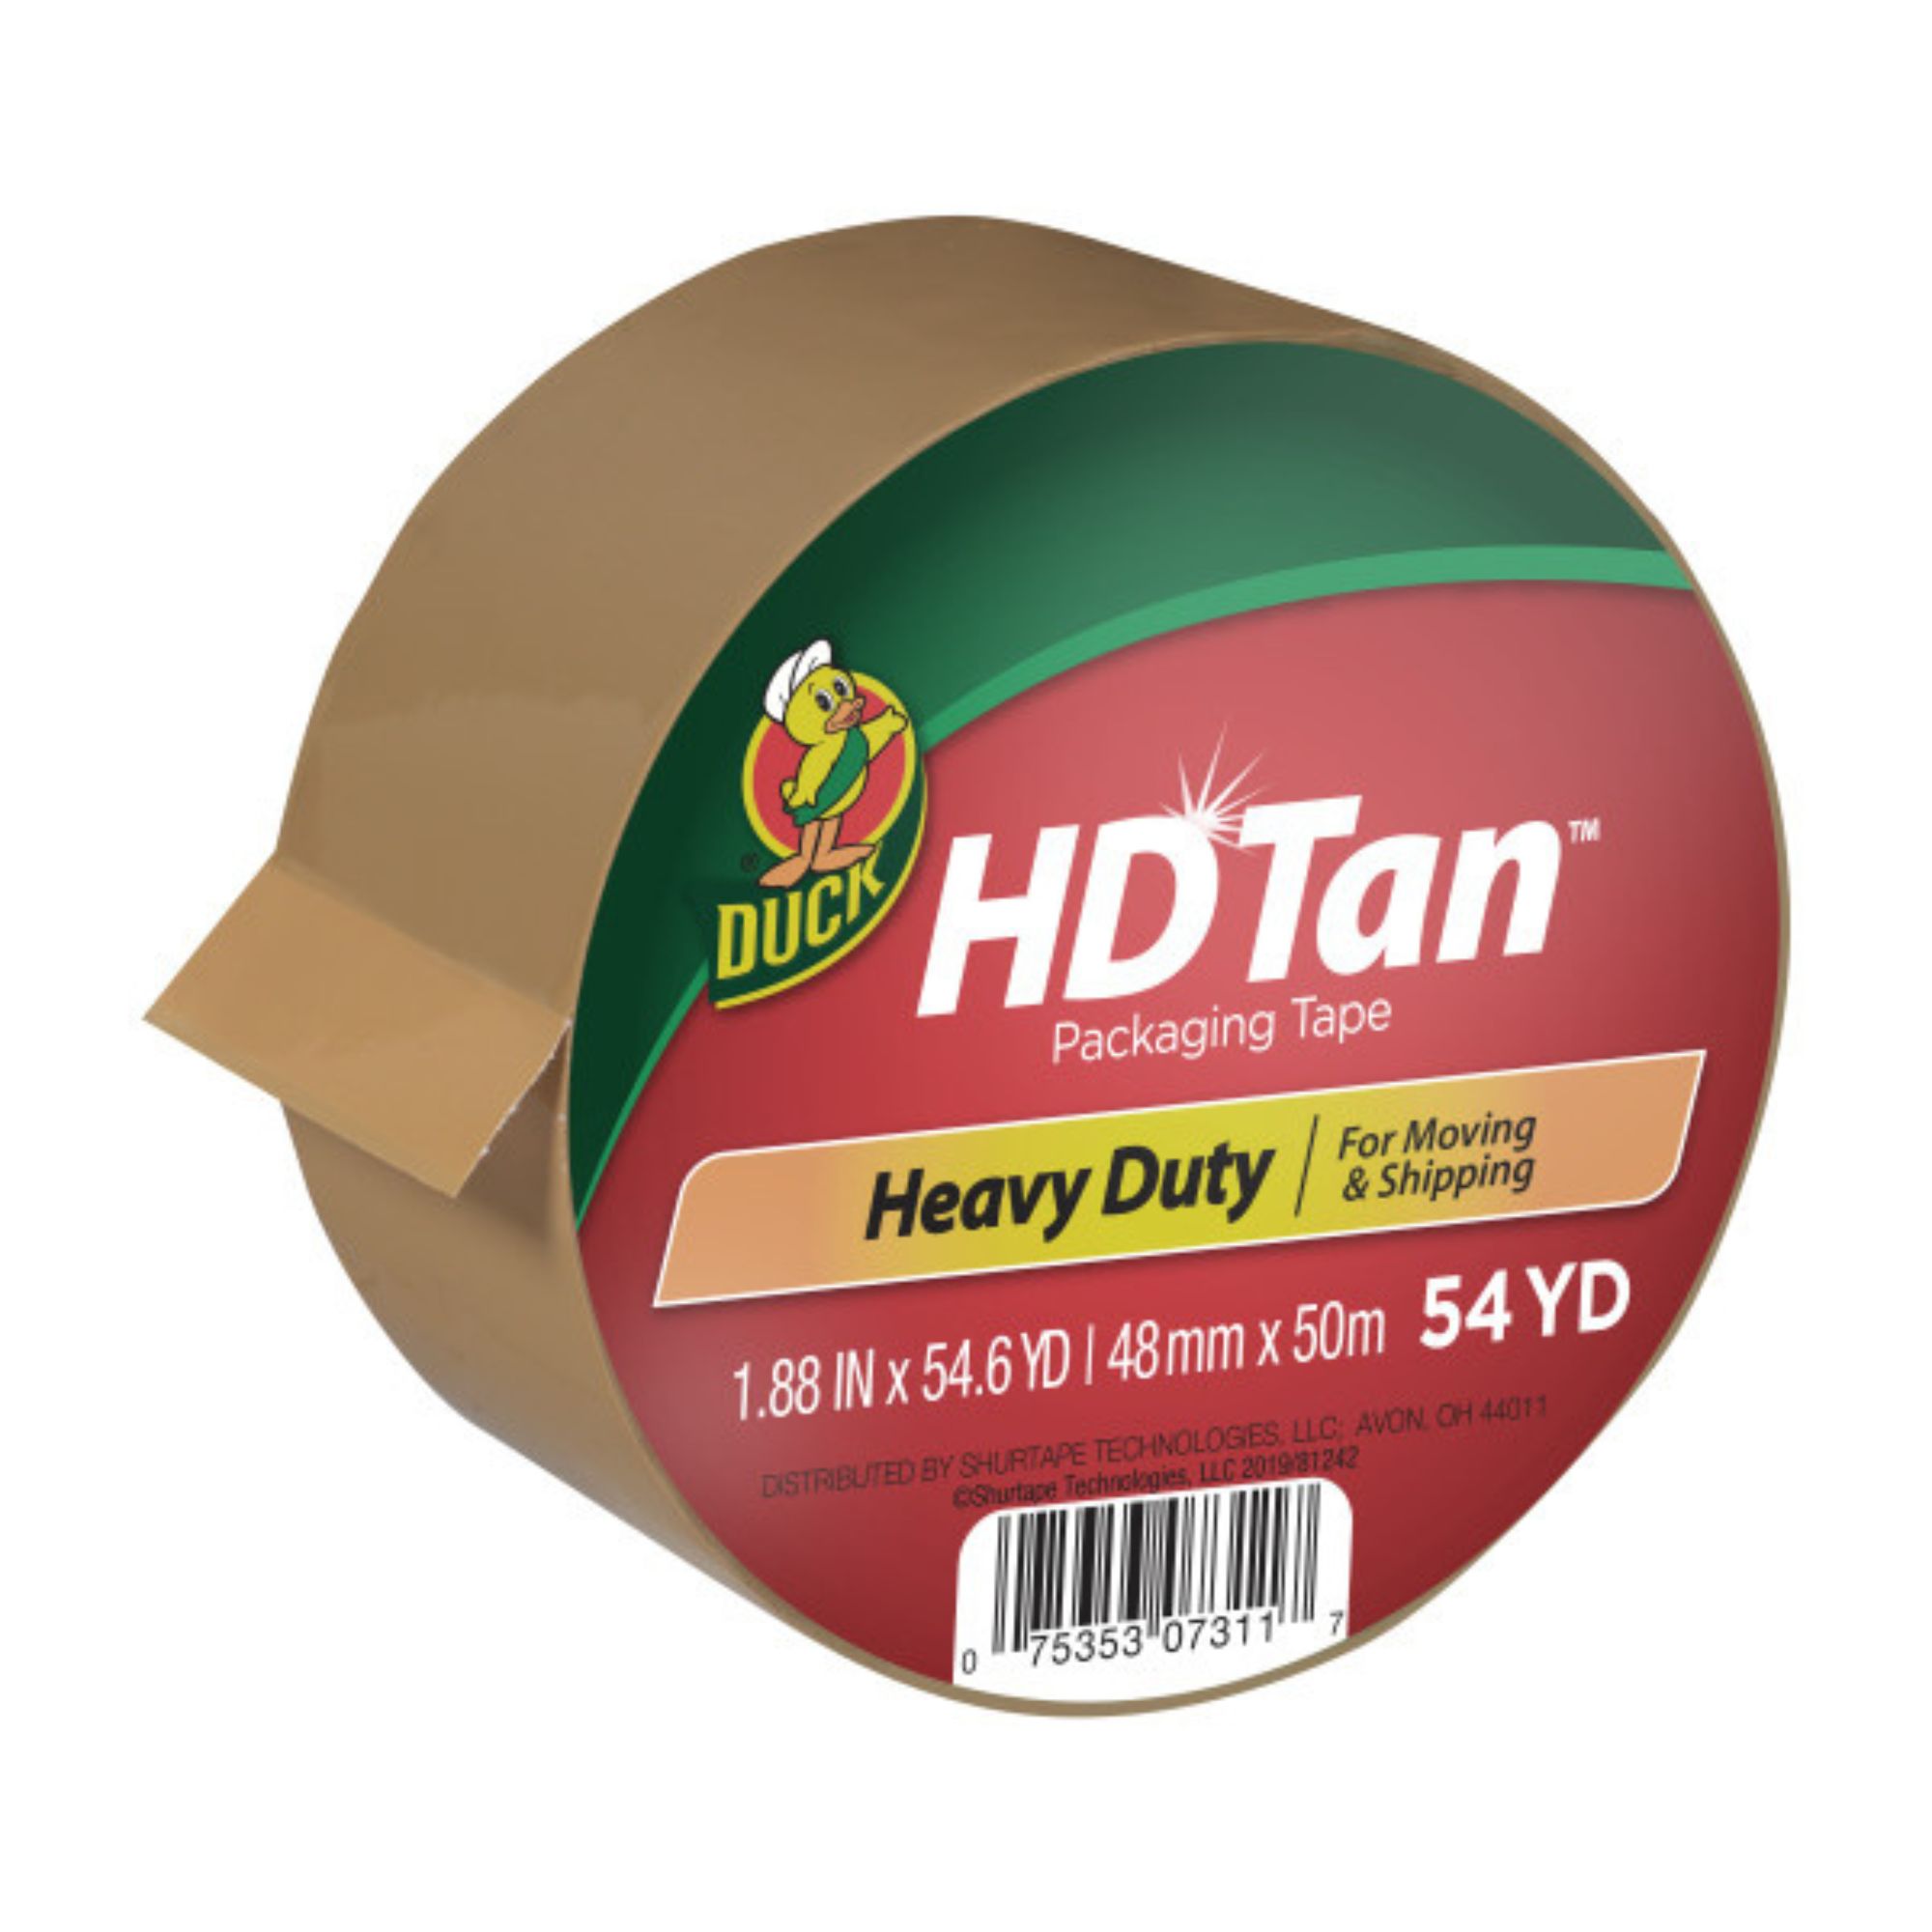 Duck Brand HD Tan Heavy-Duty Packaging Tape